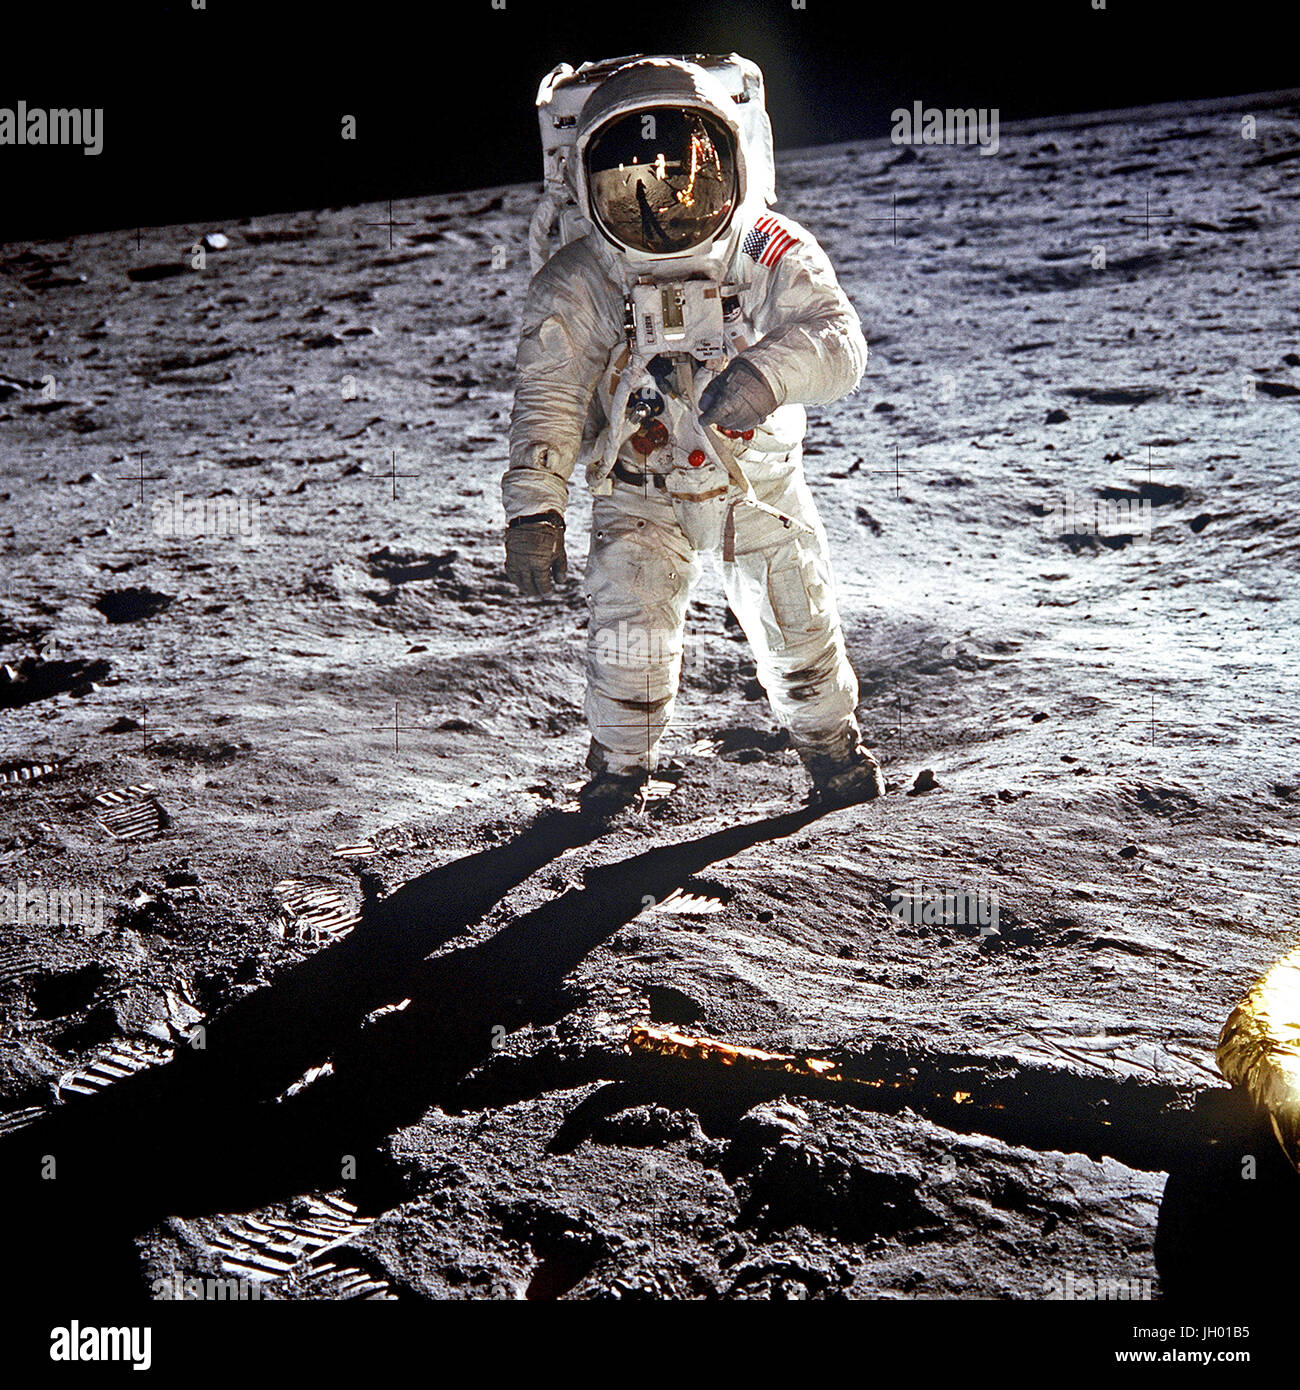 Astronaut Buzz Aldrin, Pilot der Mondlandefähre der ersten Mondlandung Mission, während Apollo 11 Extravehicular Activity (EVA) auf der Mondoberfläche. Die Mondlandefähre (LM) ist auf der linken Seite, und die Fußspuren der Astronauten sind deutlich sichtbar im Boden des Mondes. Astronaut Neil A. Armstrong, Kommandant, nahm dieses Bild mit einem 70 mm Hasselblad lunar Surface-Kamera. Während Astronauten Armstrong und Aldrin in der LM abstammen, blieb die "Adler", zur Erkundung der Region Meer der Ruhe, des Mondes, Astronaut Michael Collins, Befehl Modul-Pilot mit der Command and Service Module (CSM) Stockfoto